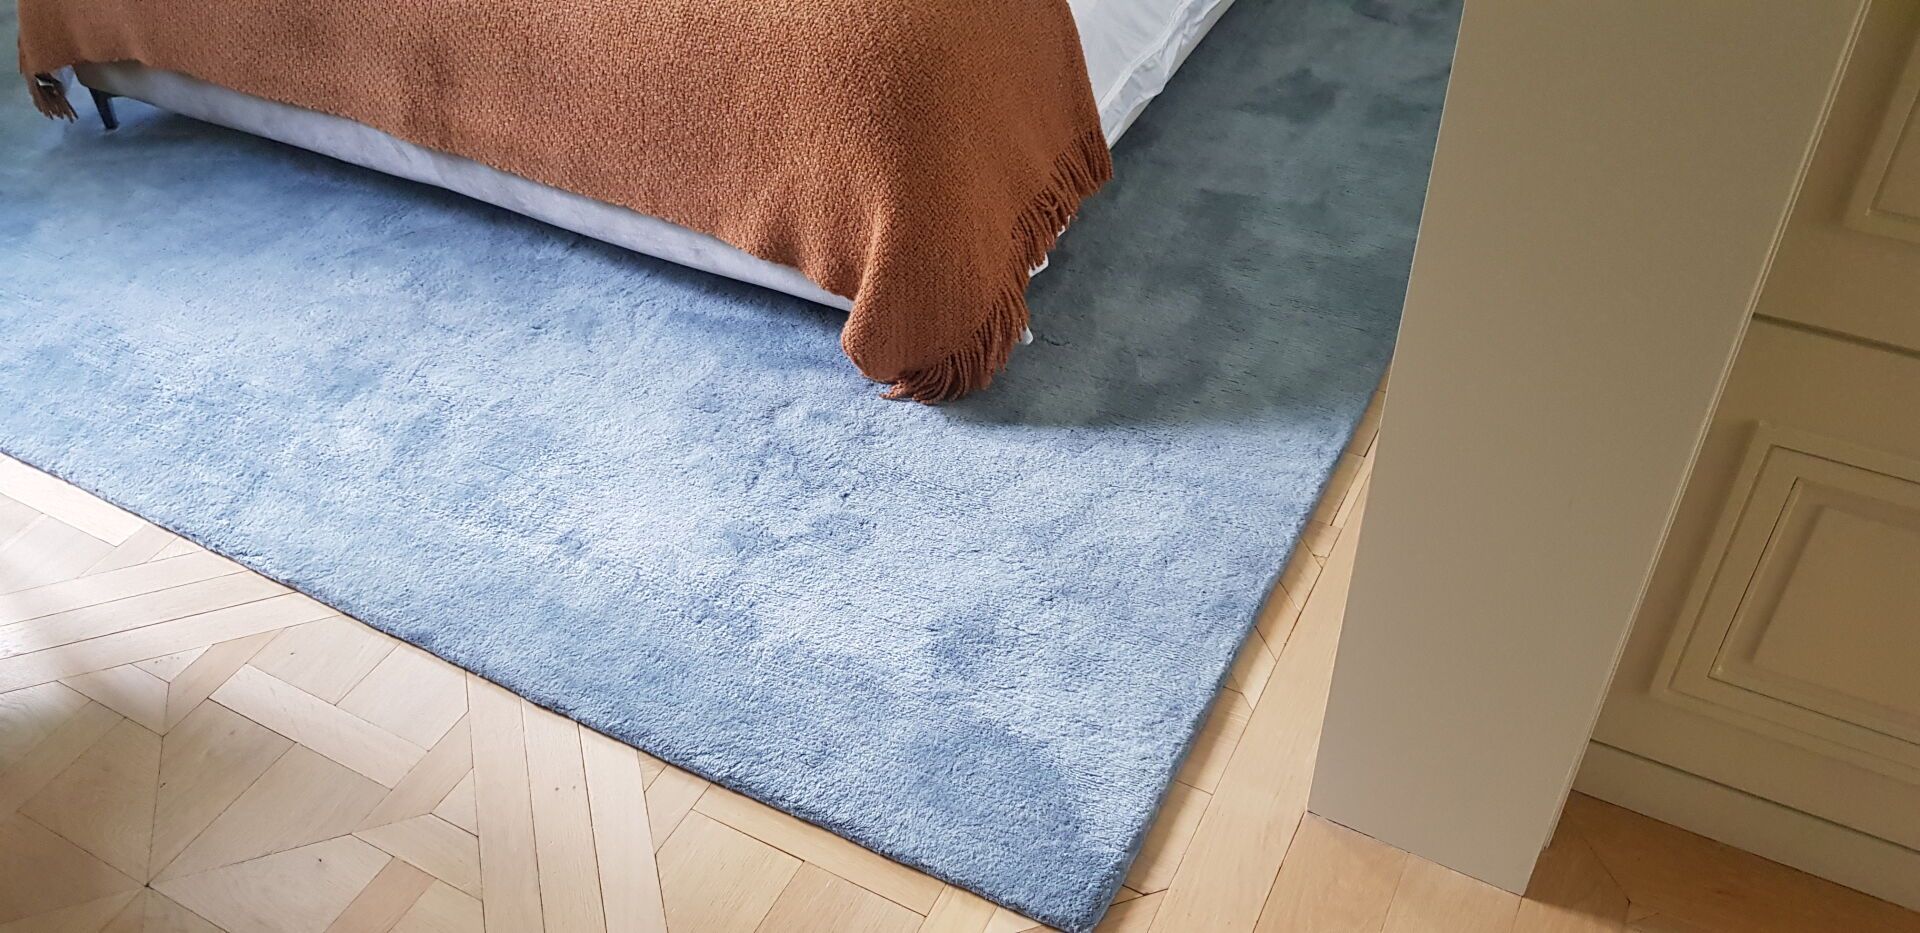 Null Tappeto in lana con sfondo blu

L'azienda di tappeti

300 x 330 cm